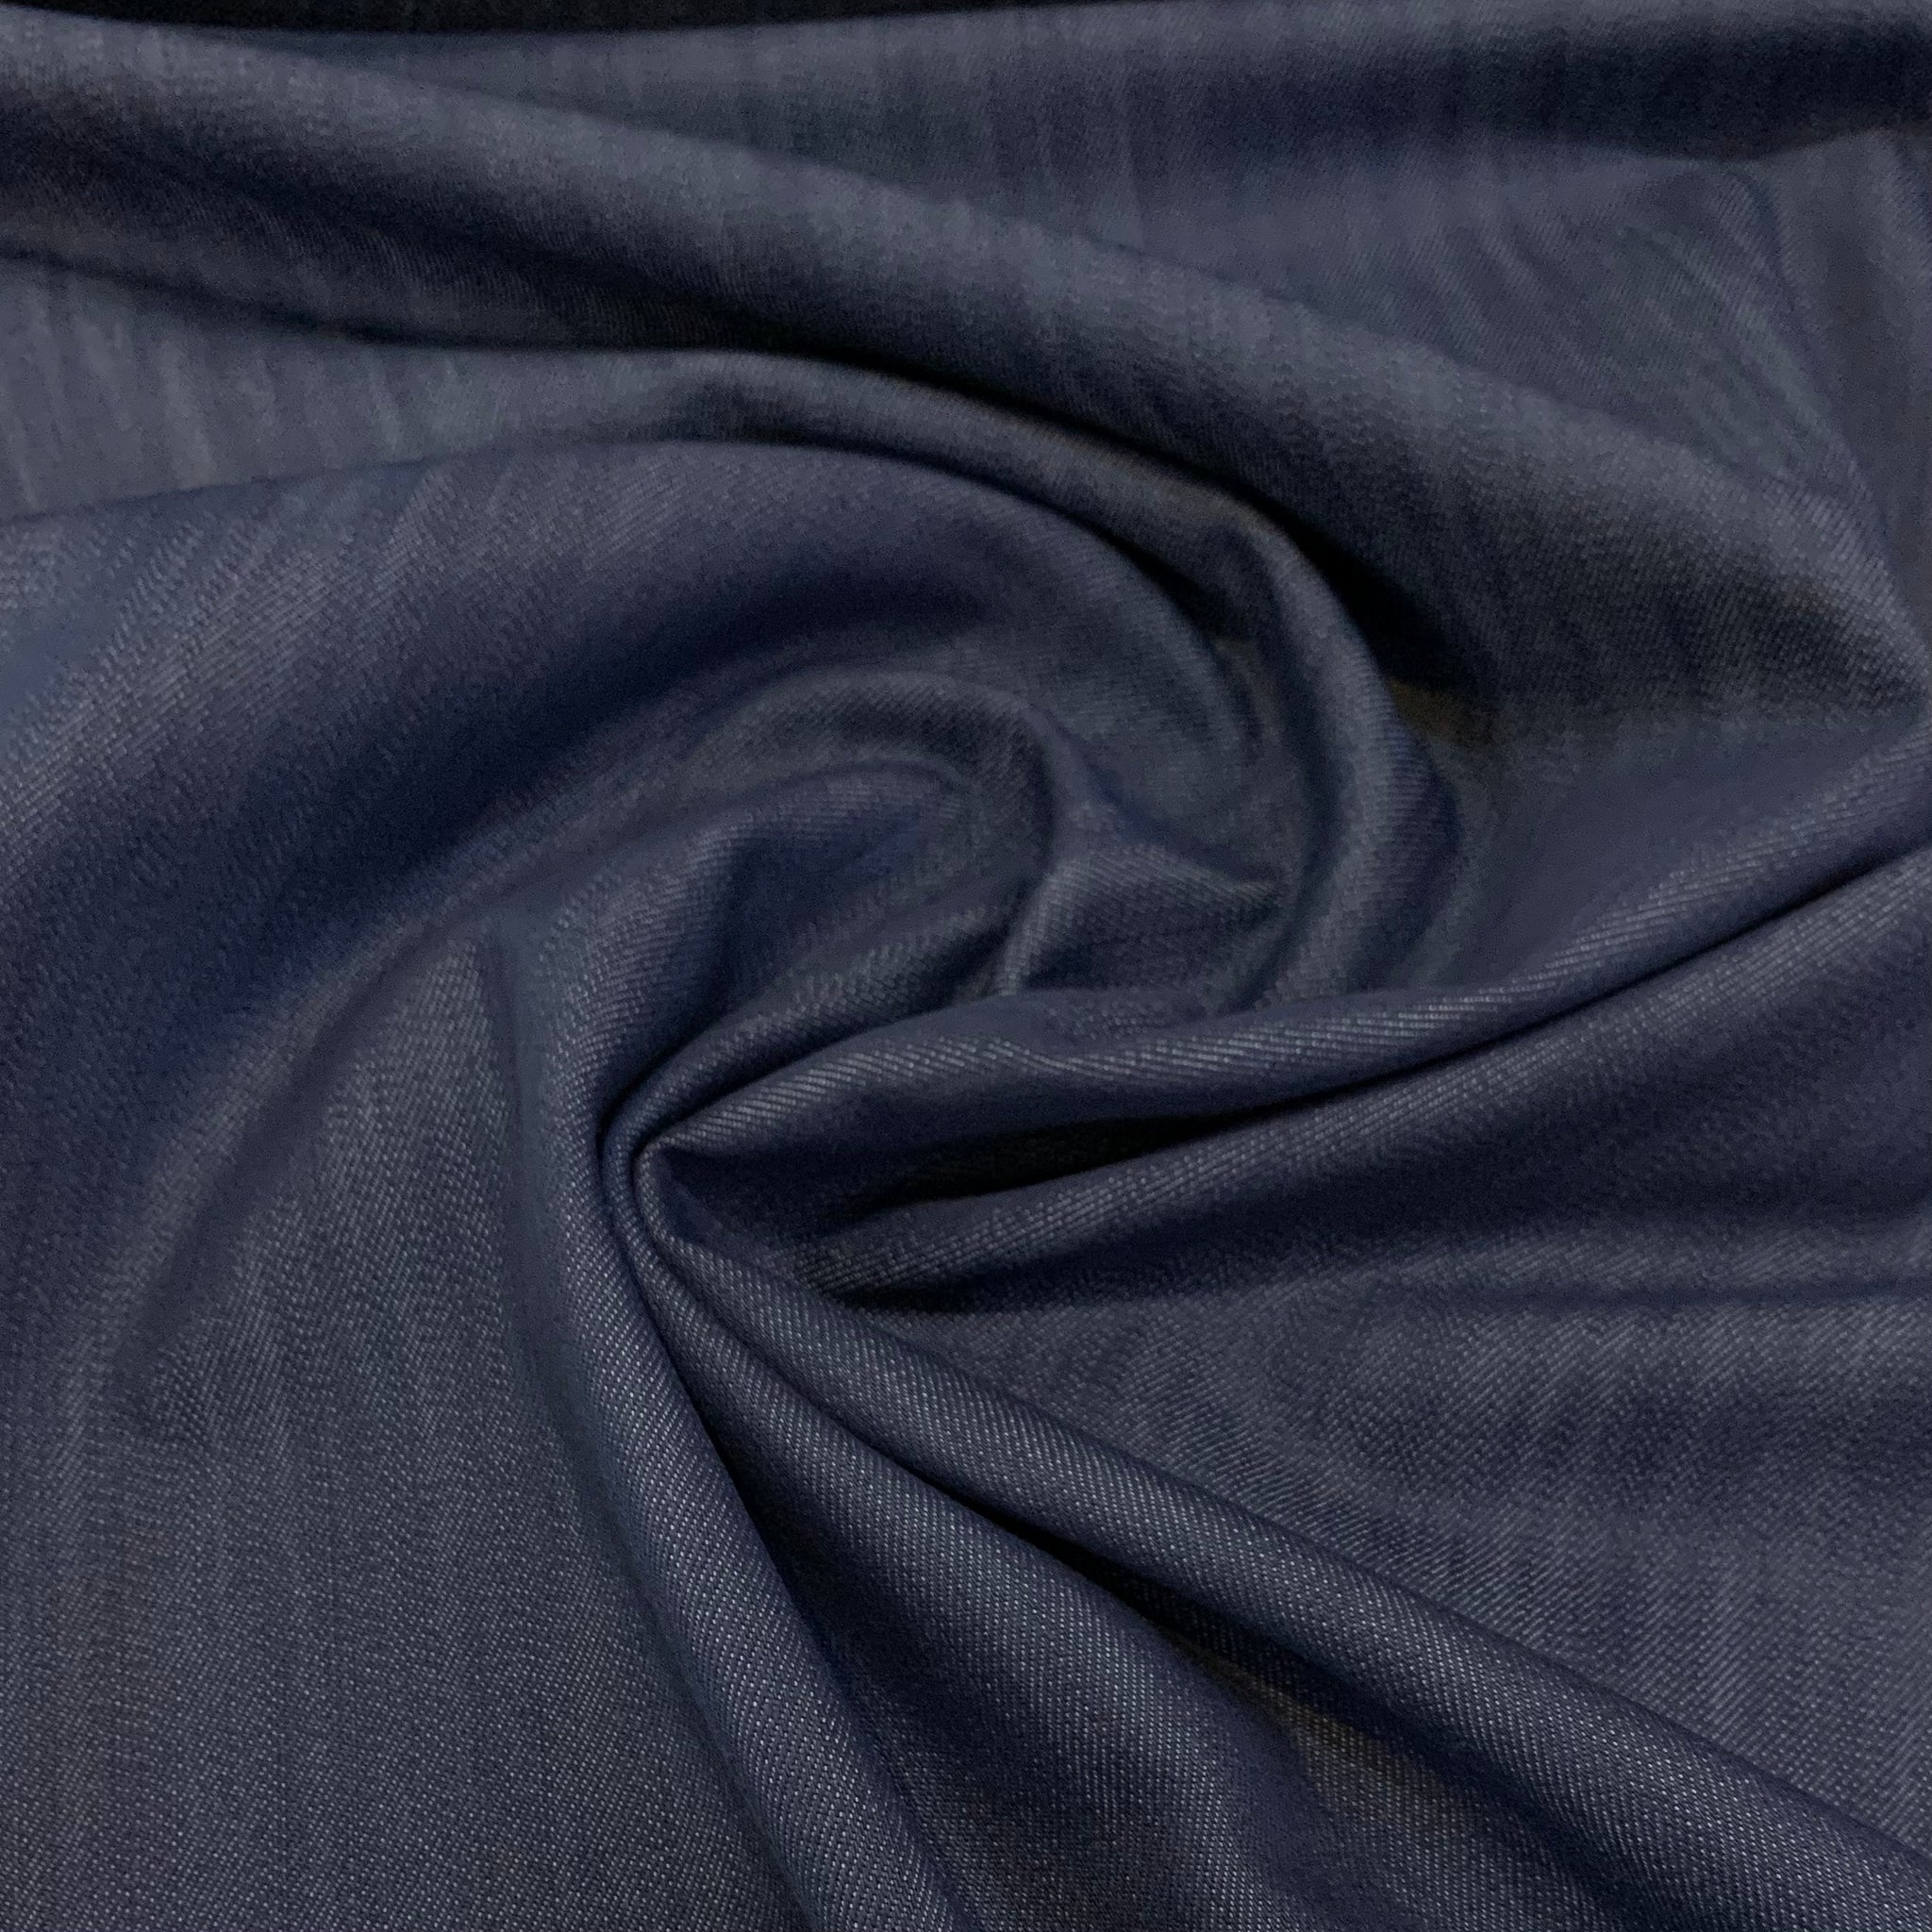 Stretch Denim Cotton Poly Spandex Fabric - True Blue